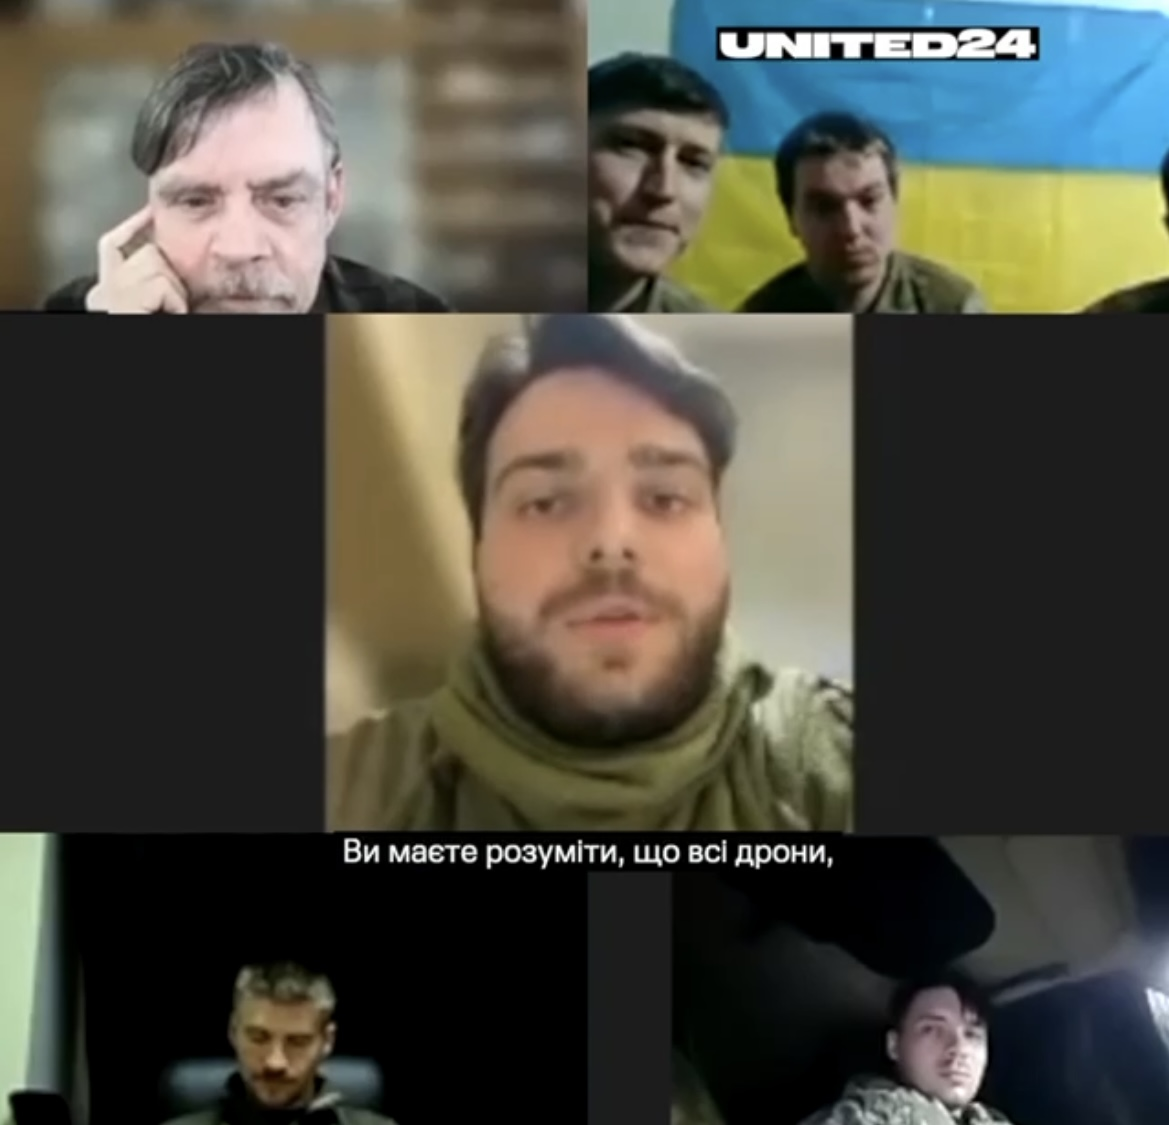 Звезда "Звездных войн" пообщался с украинскими защитниками: я играю воина в кино, а вы настоящие герои настоящей войны